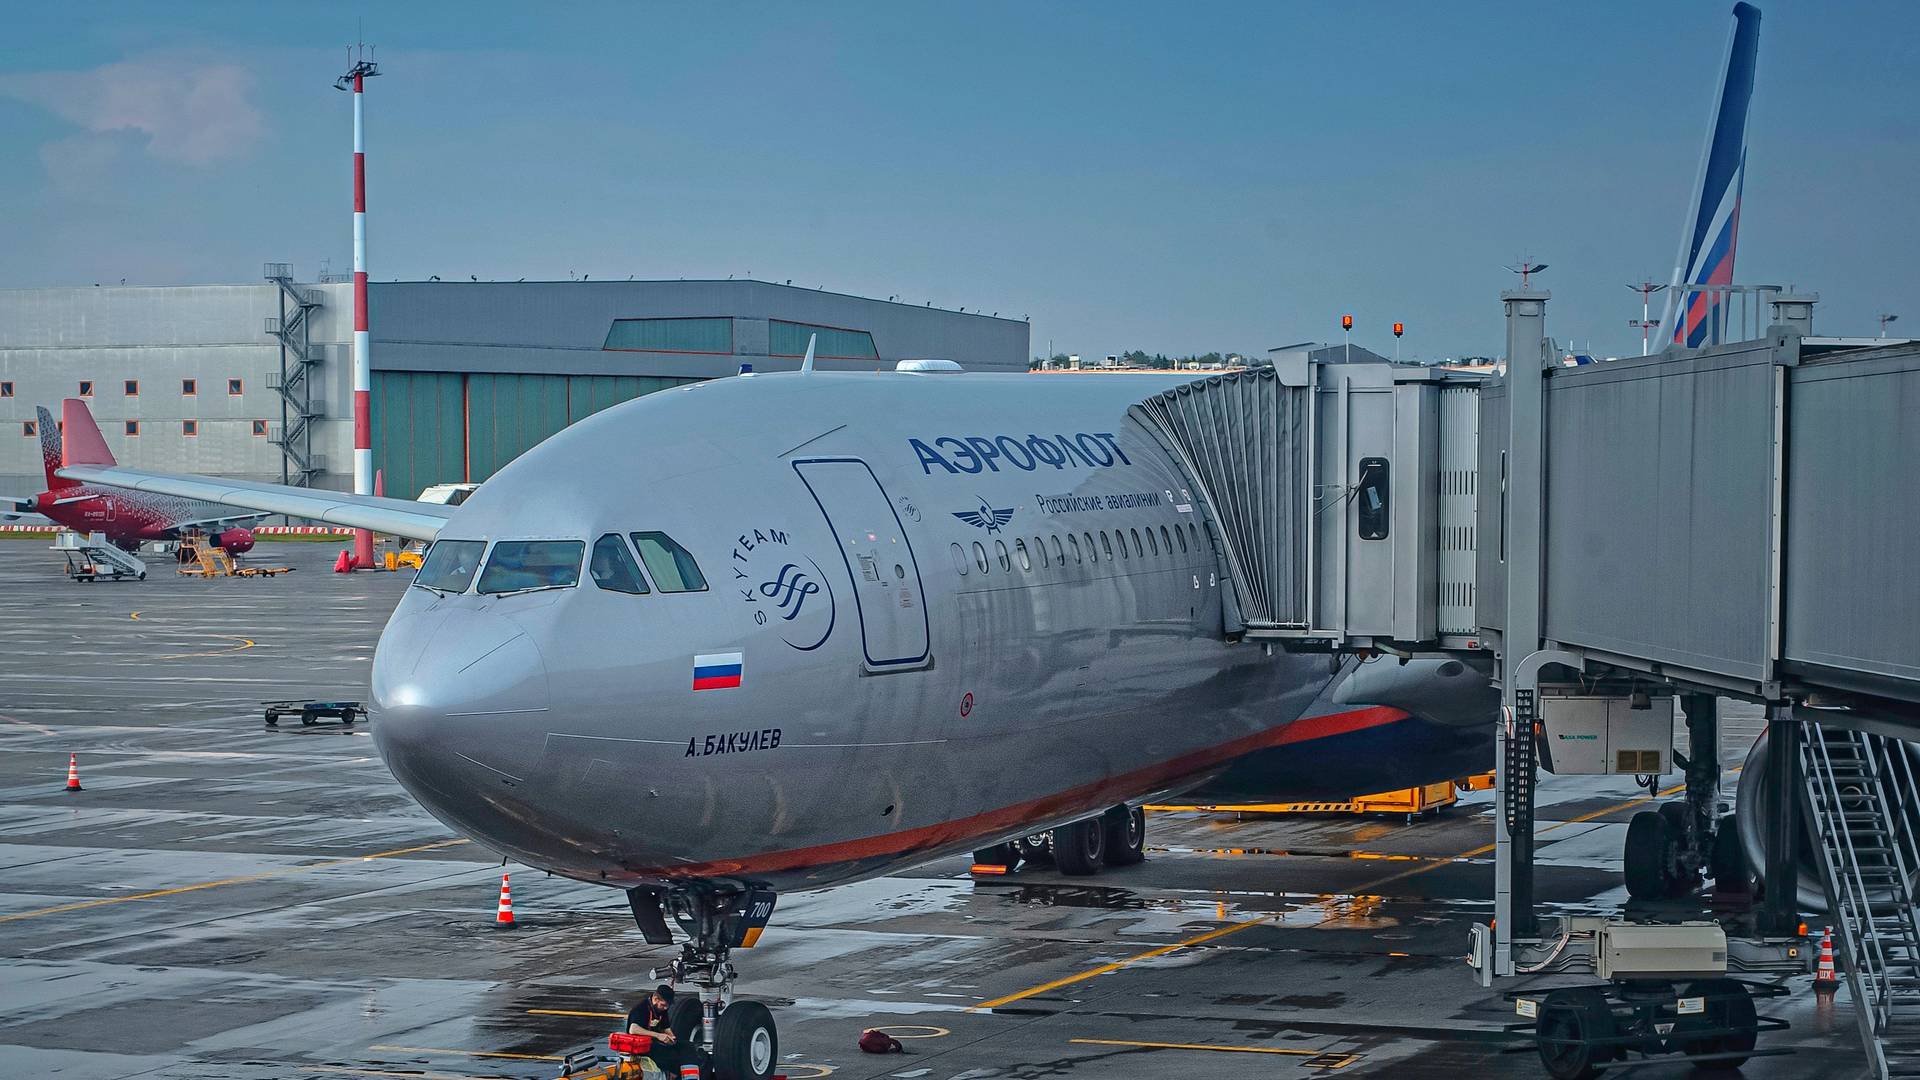 Lessor SMBC Settles With Insurer Over Aeroflot Aircraft